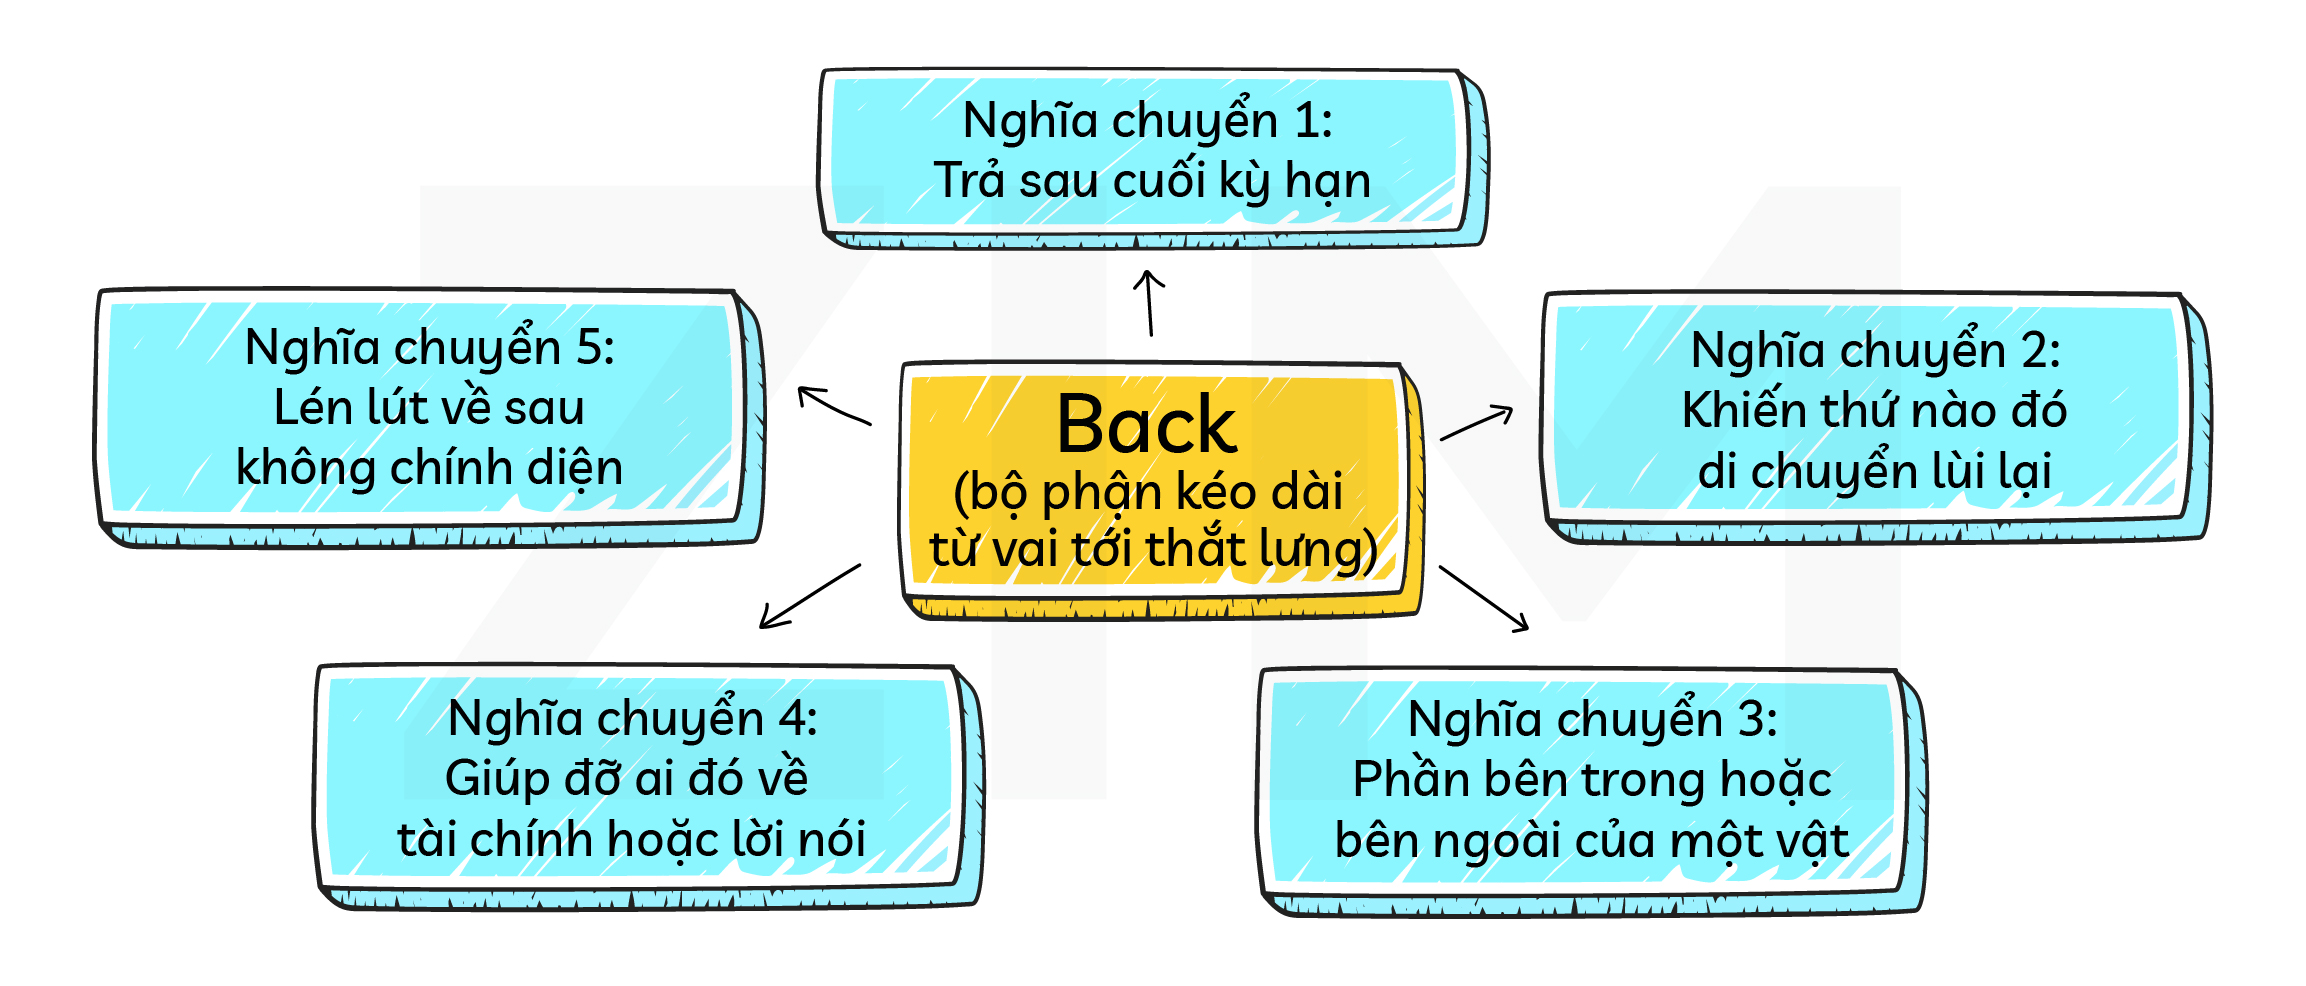 hoc-tu-vung-nghia-chuyen-back